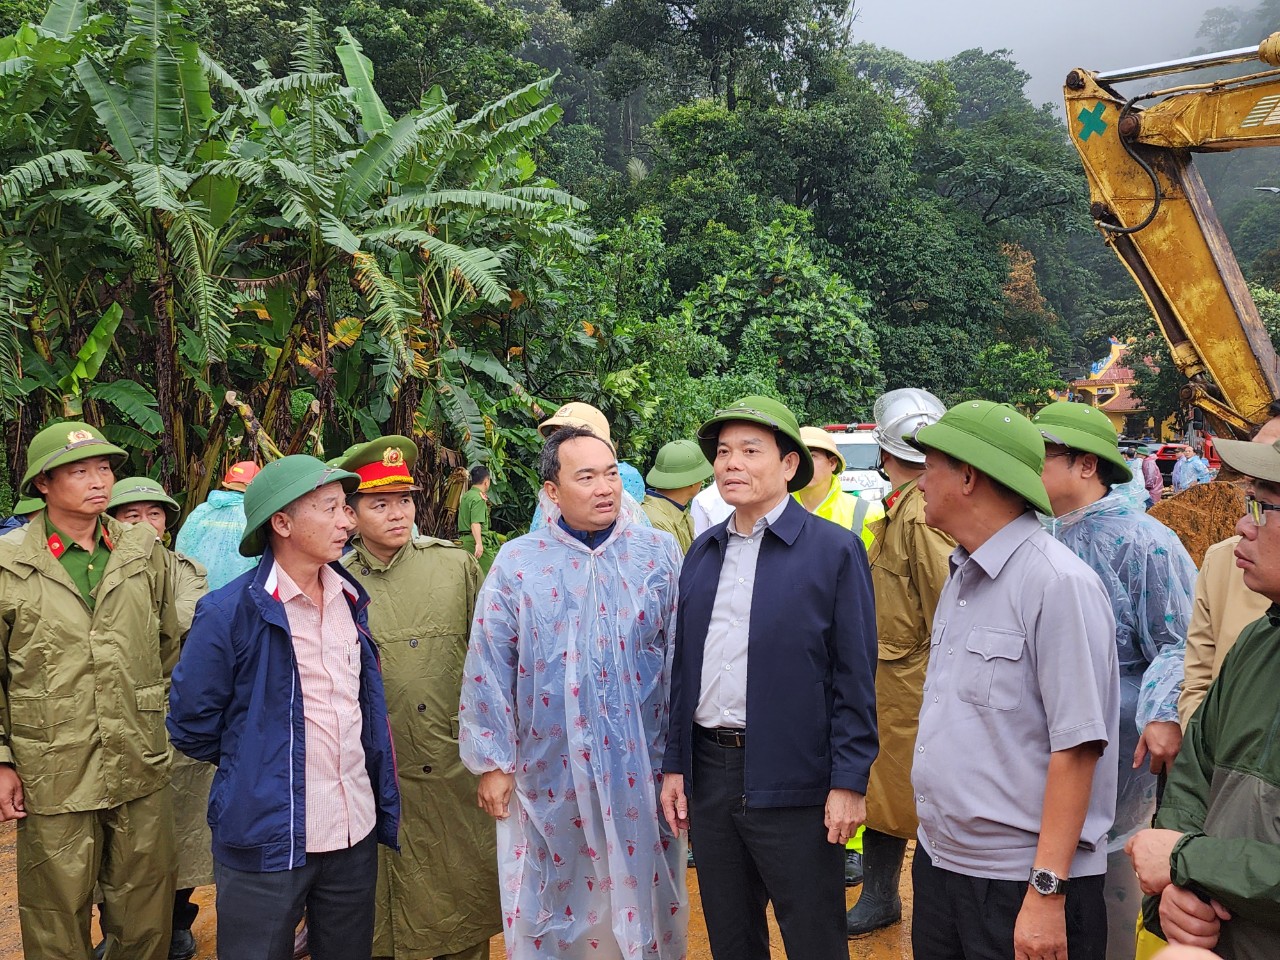 Phó Thủ tướng Trần Lưu Quang giao tỉnh Lâm Đồng và các bộ, ban, ngành trung ương hoàn tất các thủ tục trình Chính phủ truy tặng danh hiệu liệt sỹ cho chiến sỹ hy sinh khi làm nhiệm vụ tại chốt đèo Bảo Lộc.